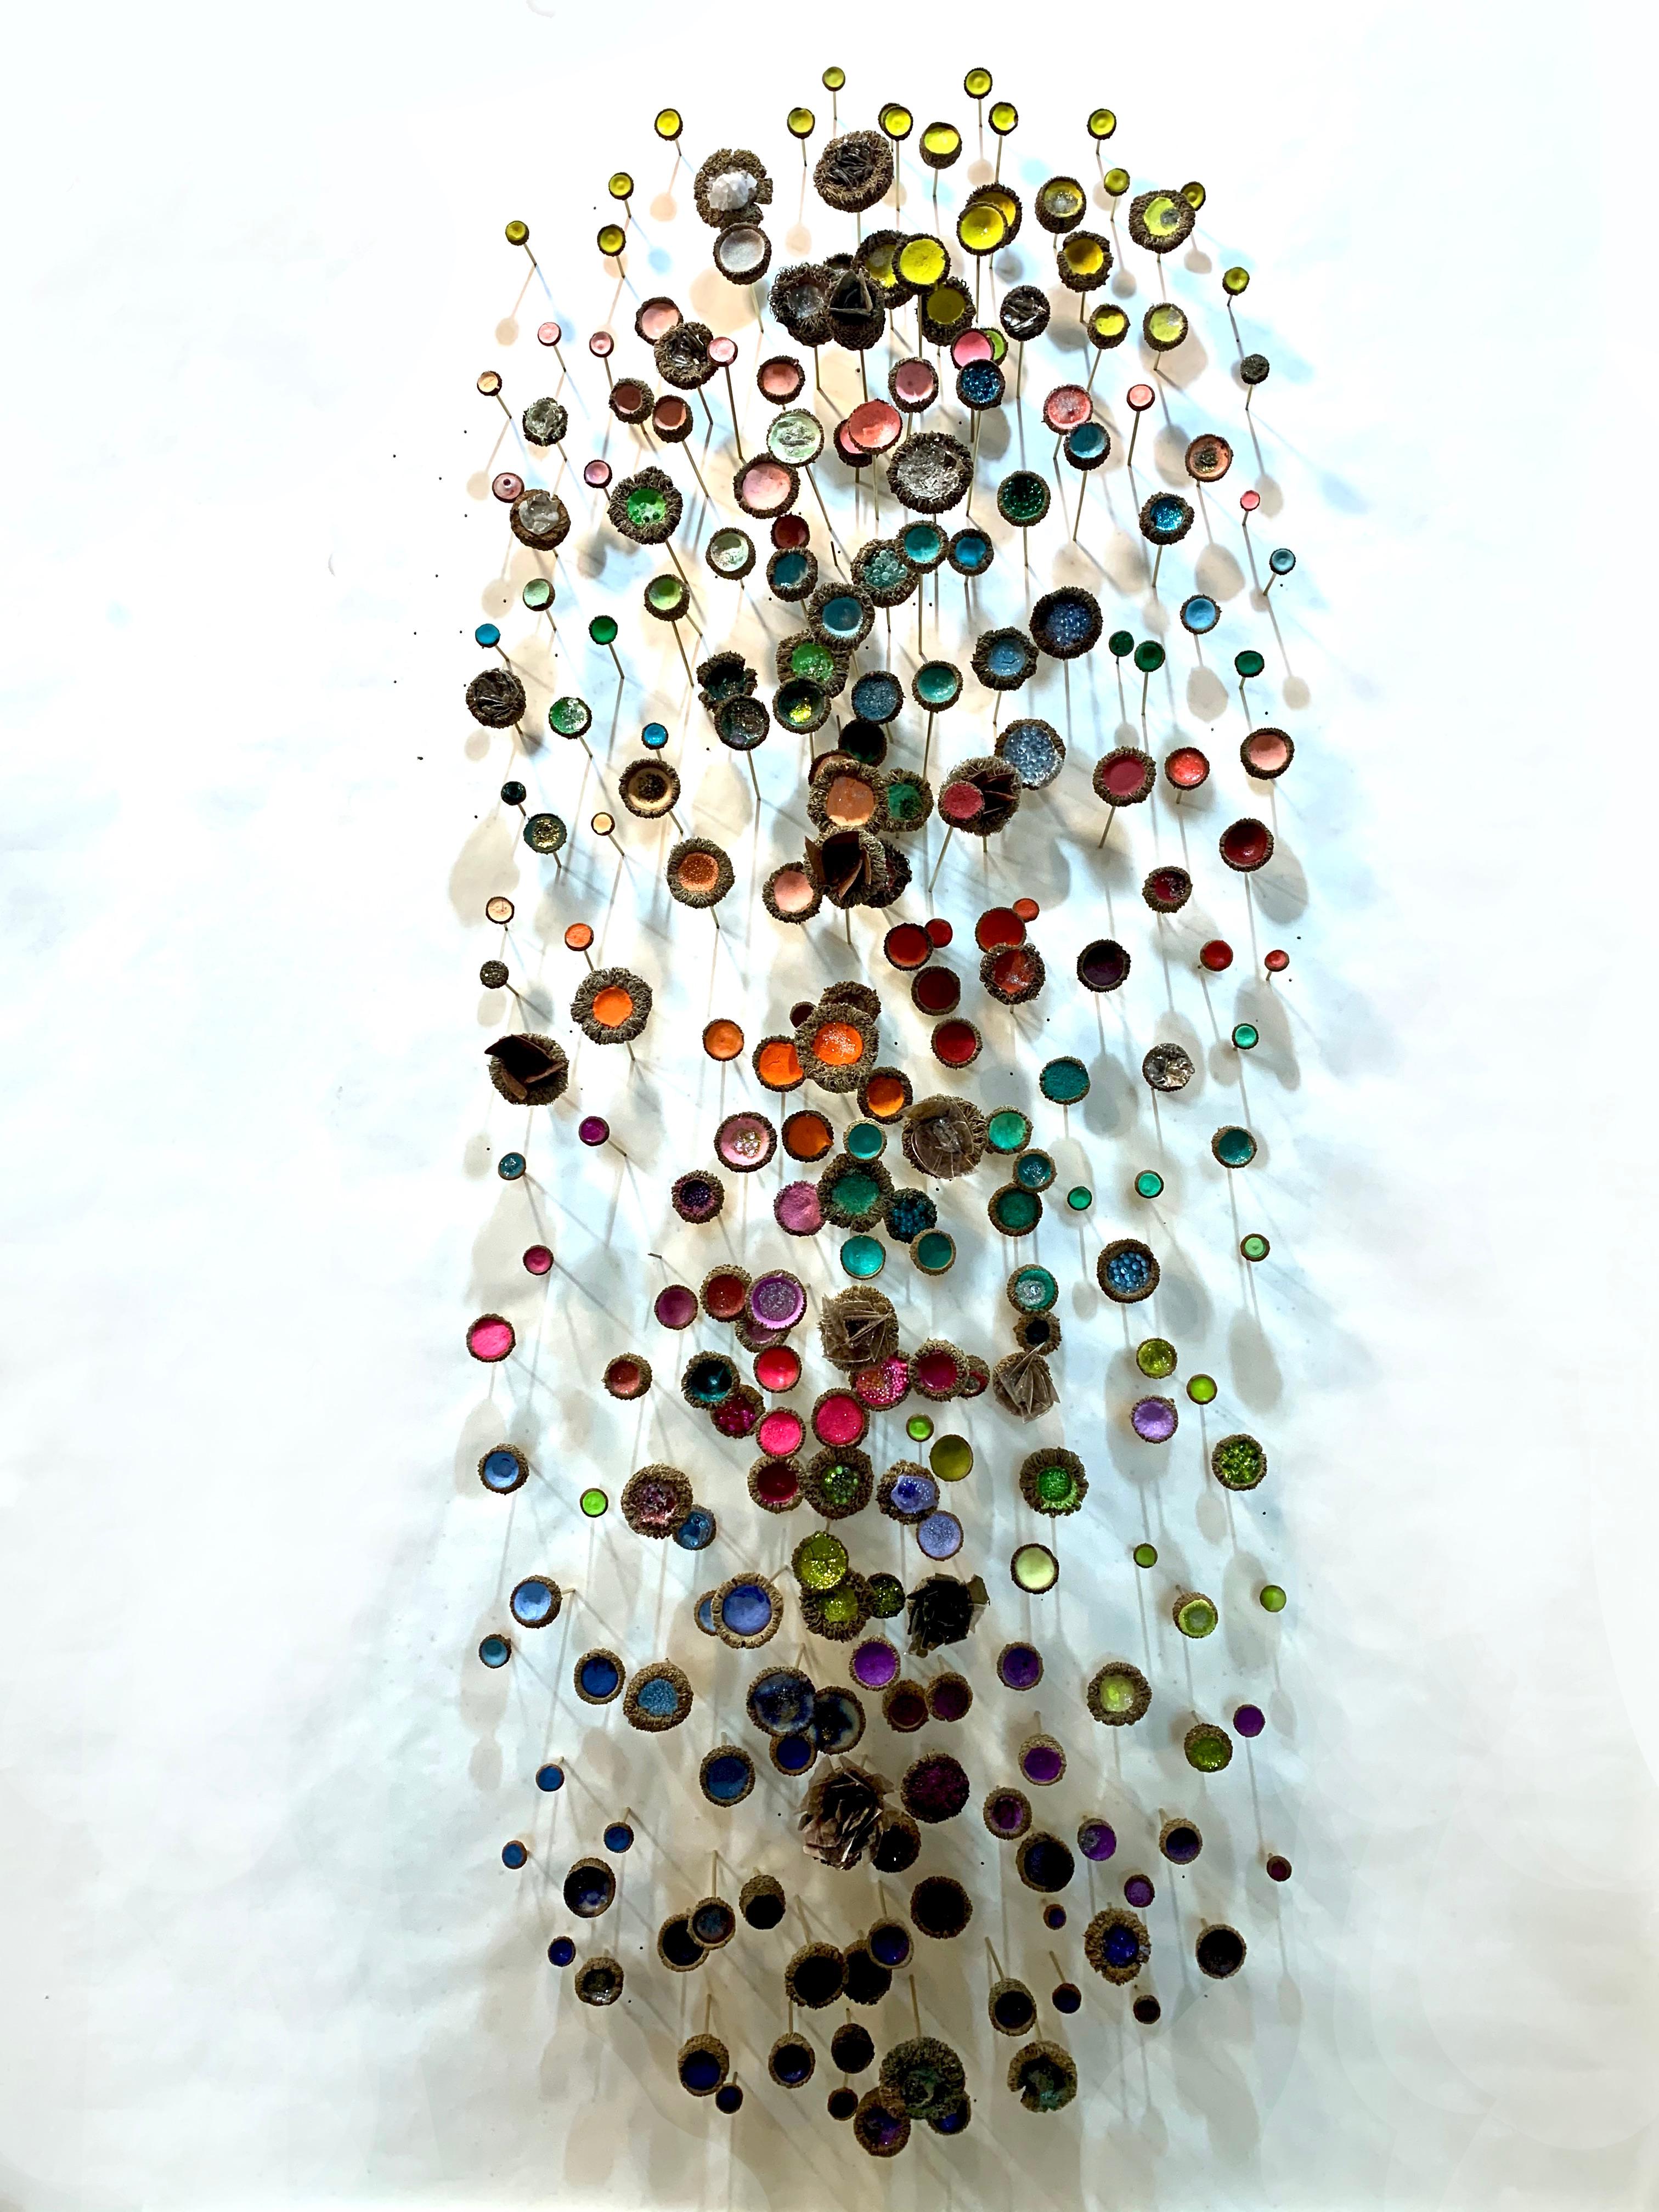 Julie Maren Abstract Sculpture - Tea Garden,  Crystals, Acorns Multicored Mixed Media Wall Mounted Sculpture